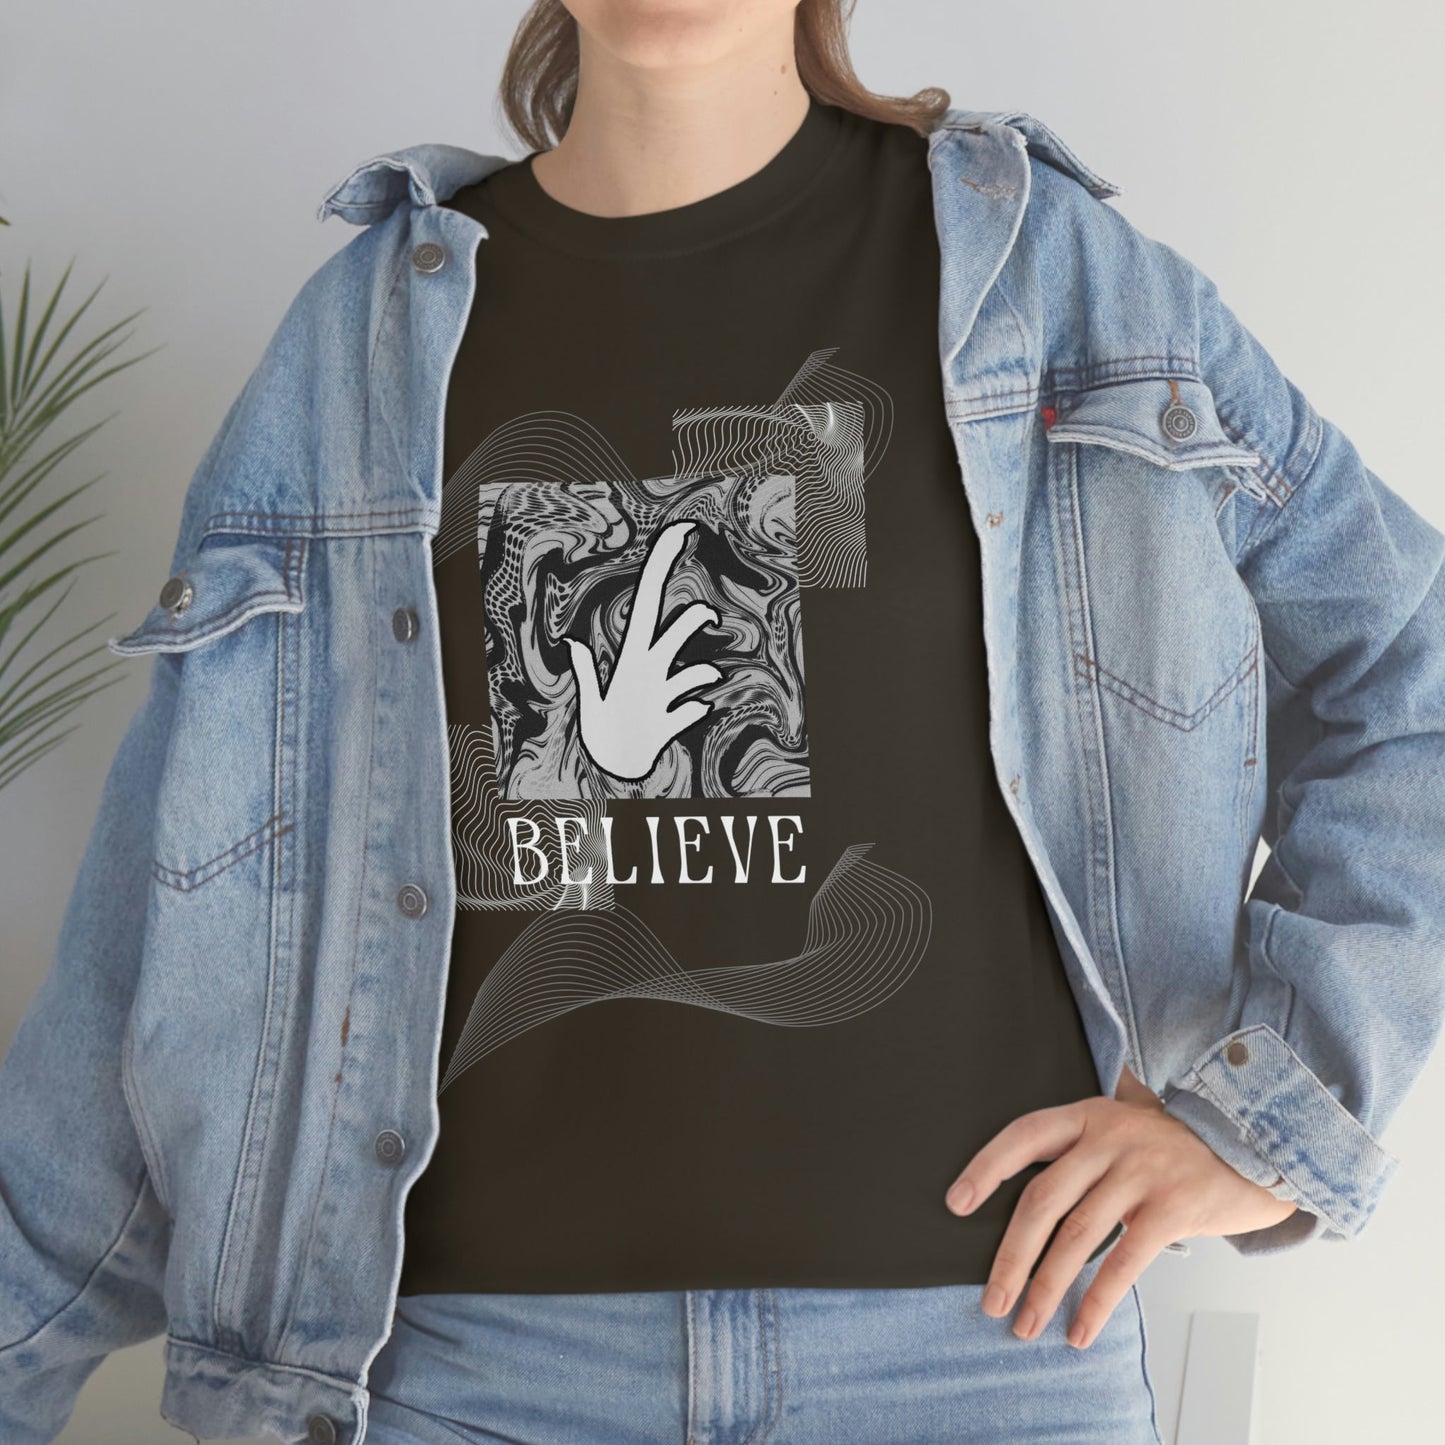 Bearded Dragon "Believe" Heavy Cotton T-Shirt